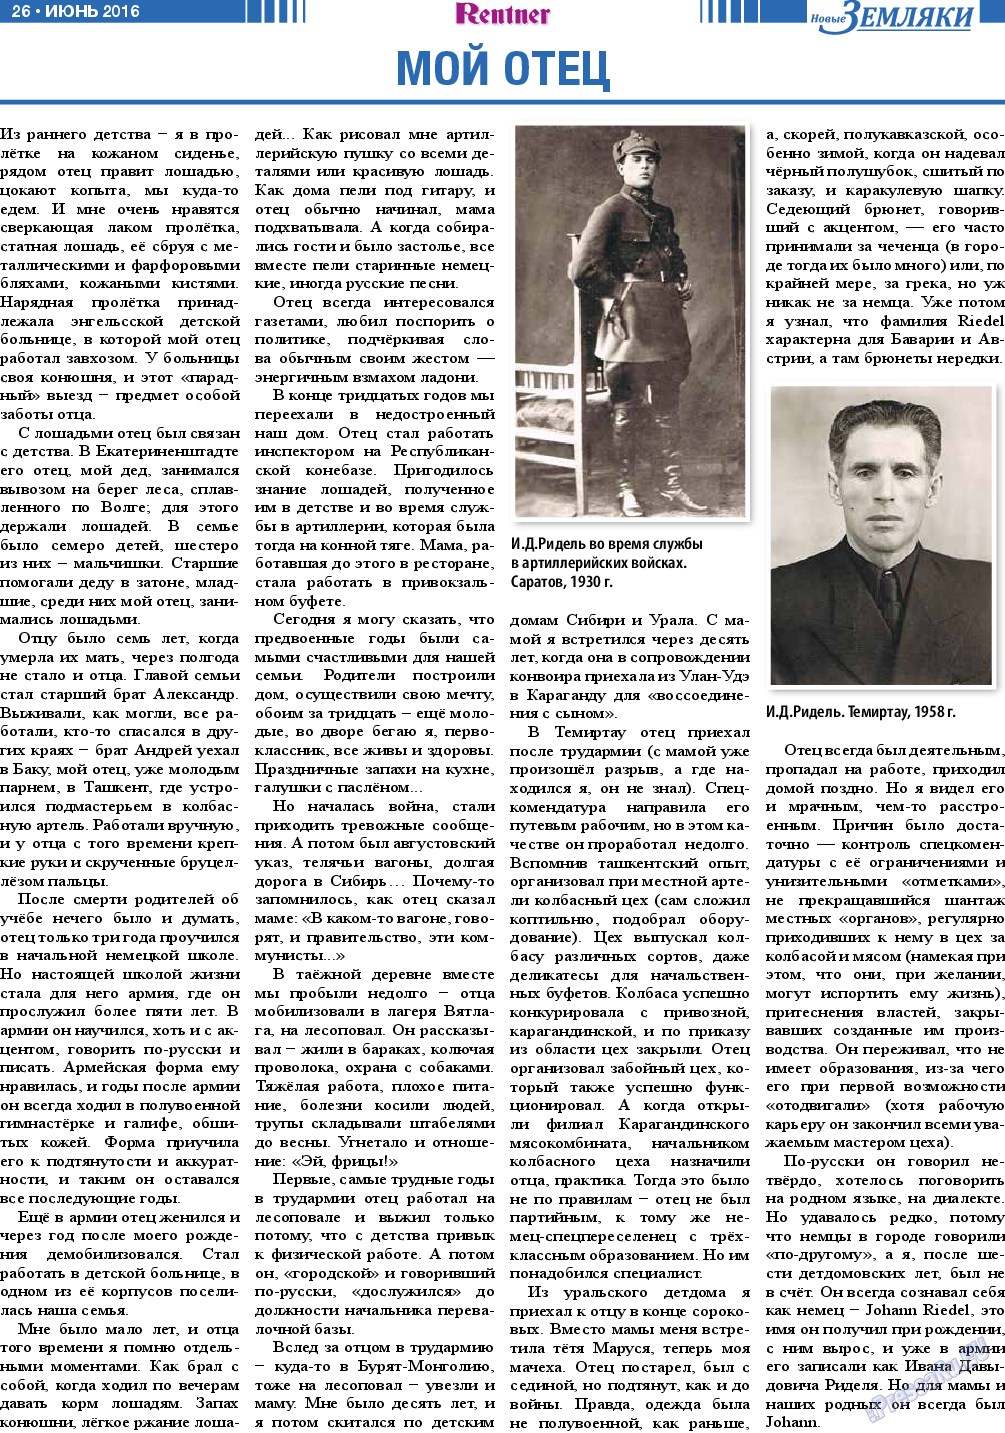 Новые Земляки, газета. 2016 №6 стр.26